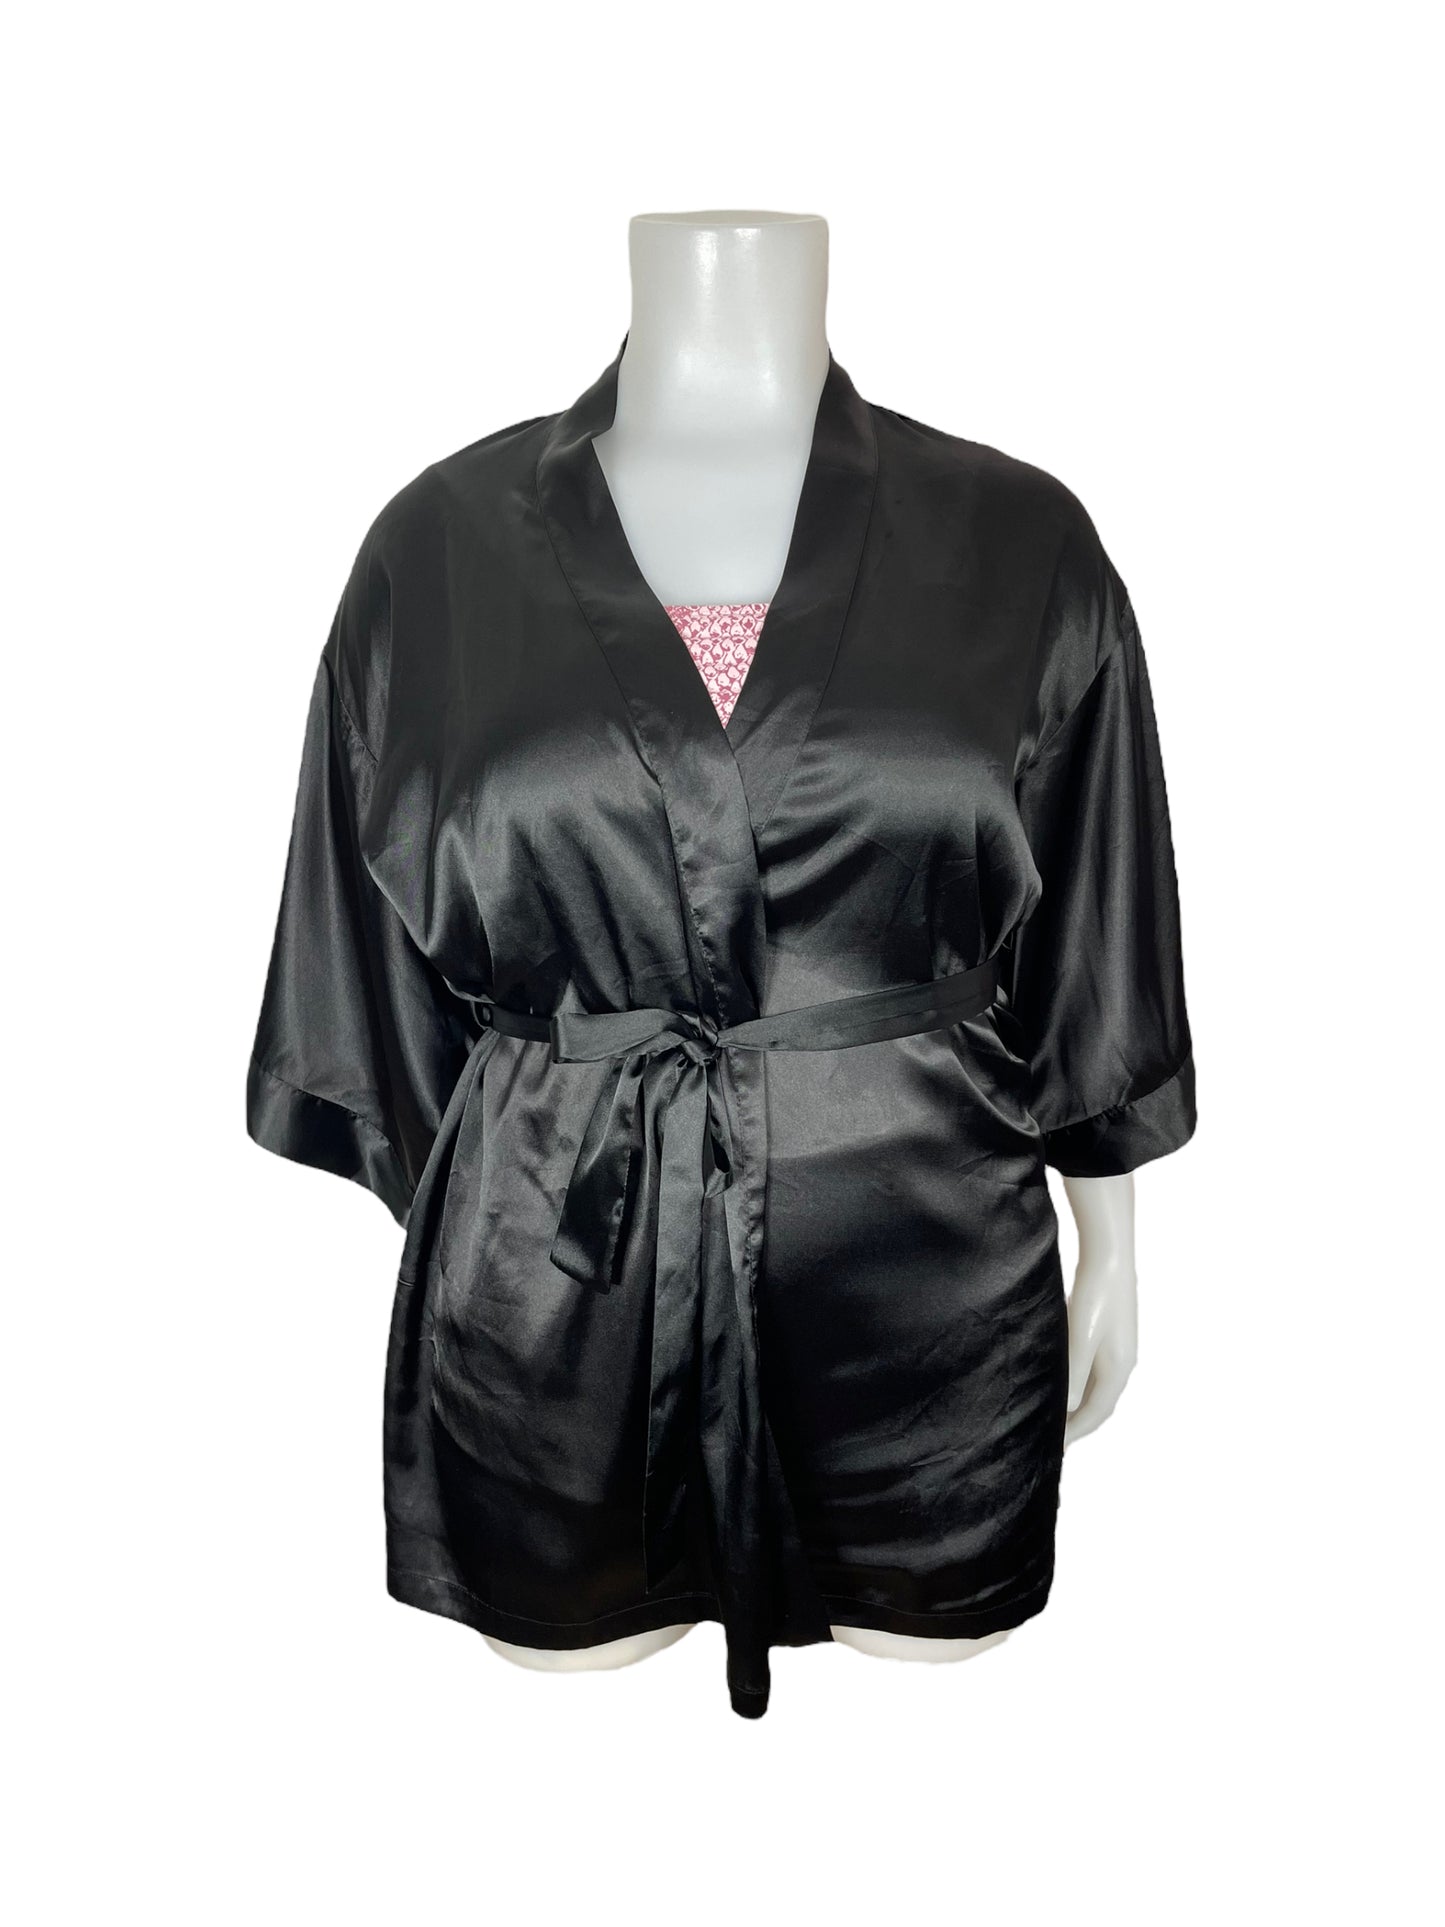 “La Senza” Black Satin Robe with Tie(L-XL)